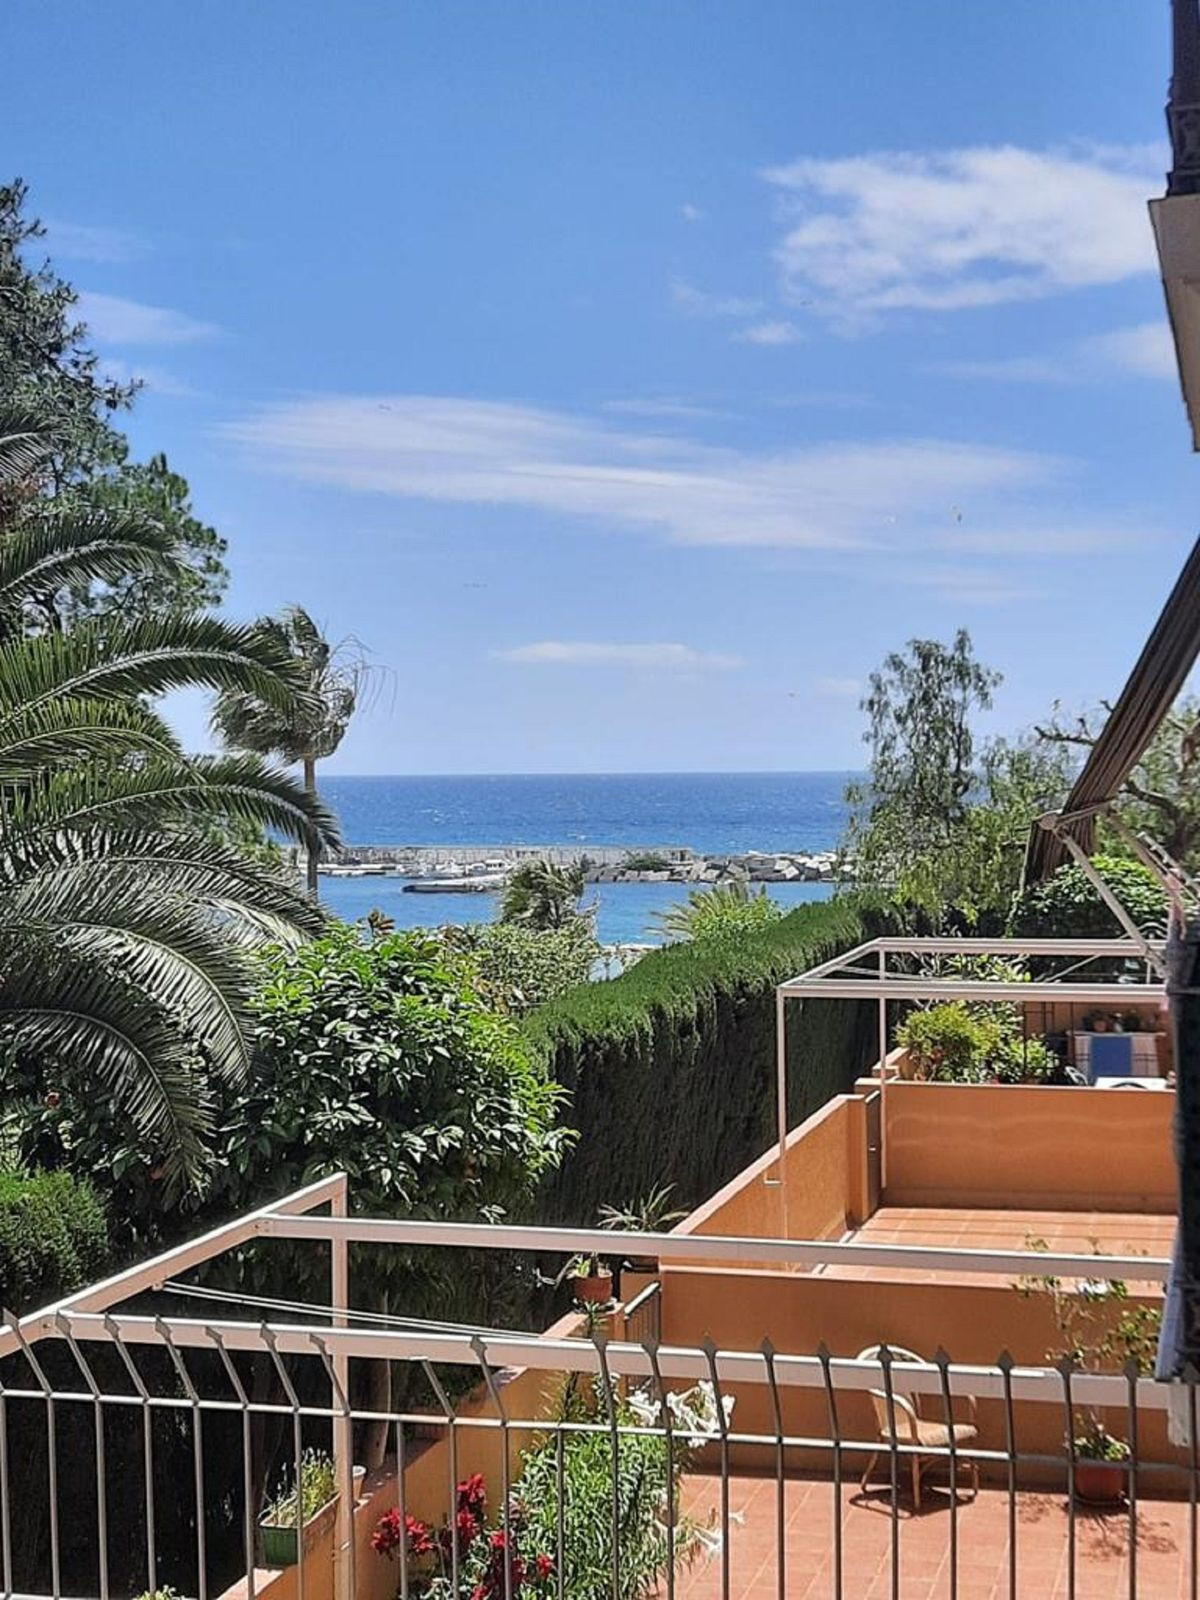 						Apartamento  Planta Baja
													en venta 
																			 en Marbella
					